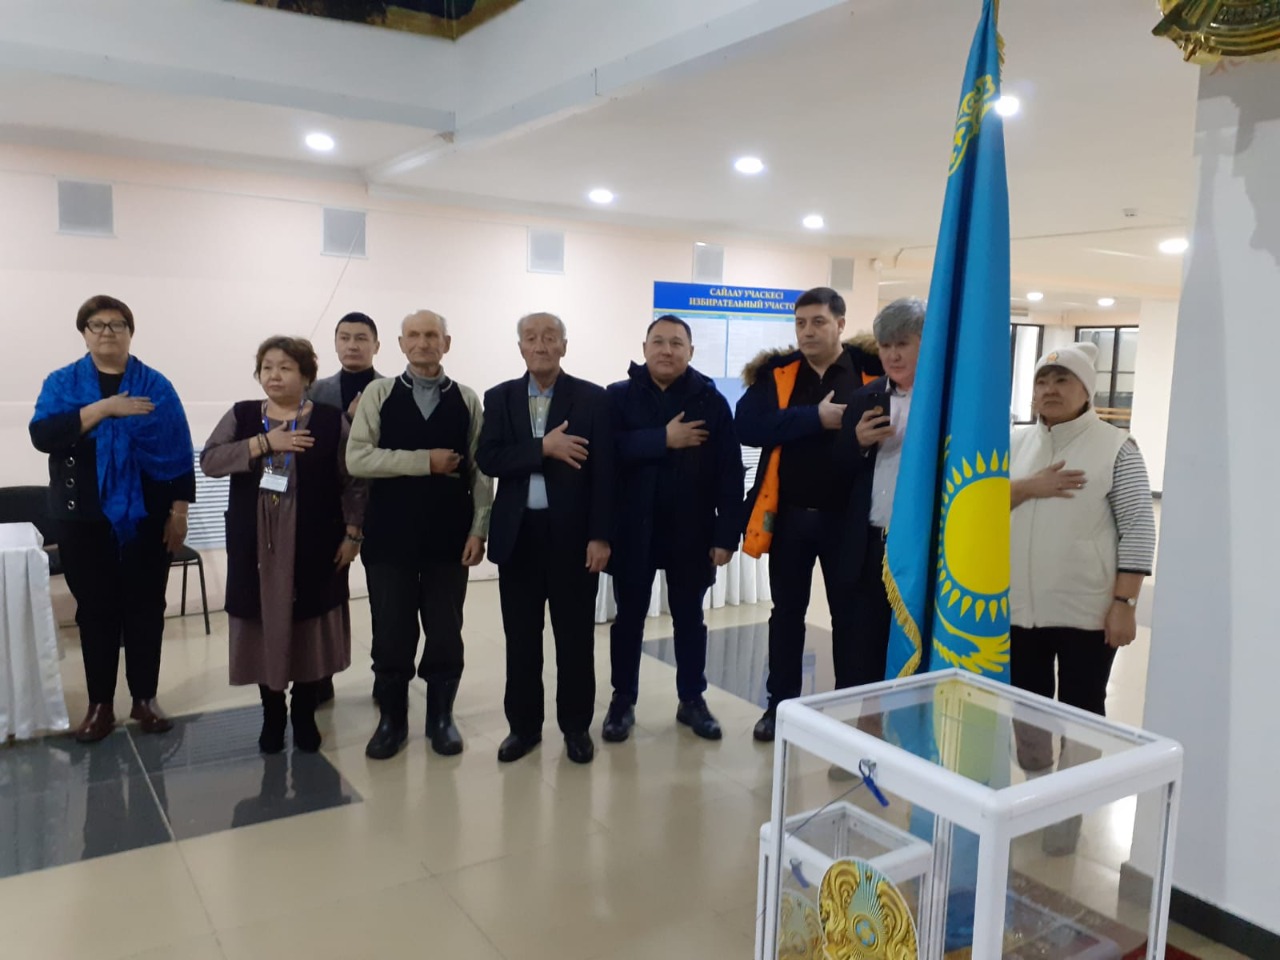 Сегодня с 7 часов утра стартовал процесс голосования по выборам Президента Республики Казахстан.